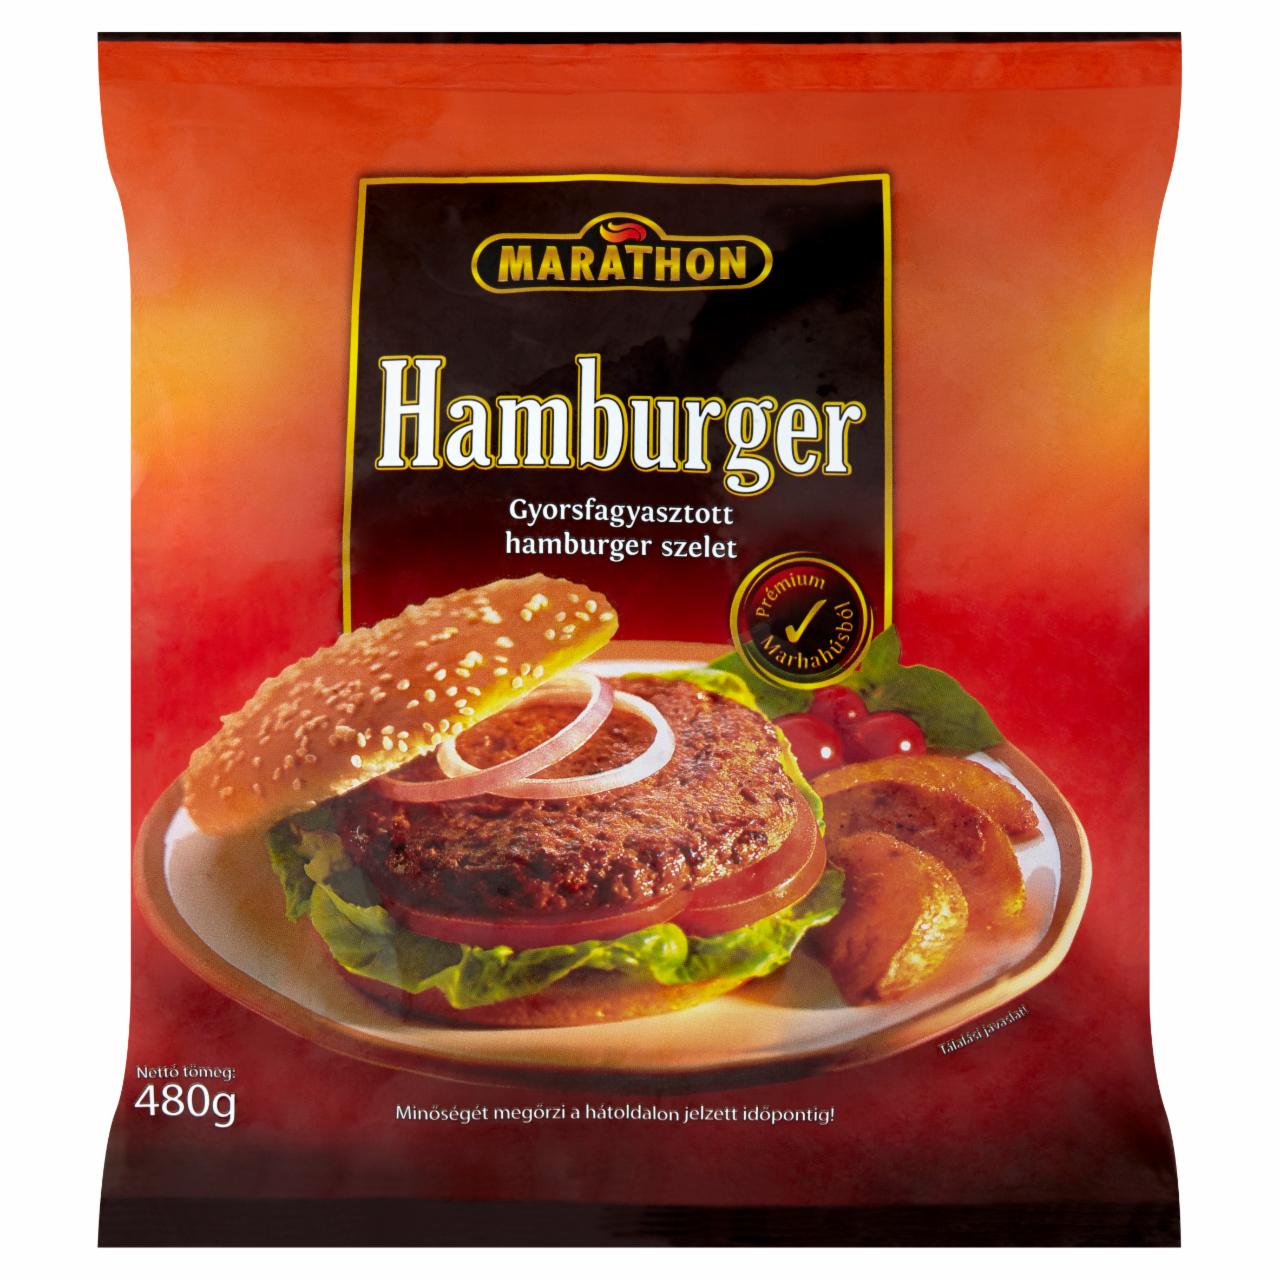 Képek - Marathon gyorsfagyasztott hamburger 480 g